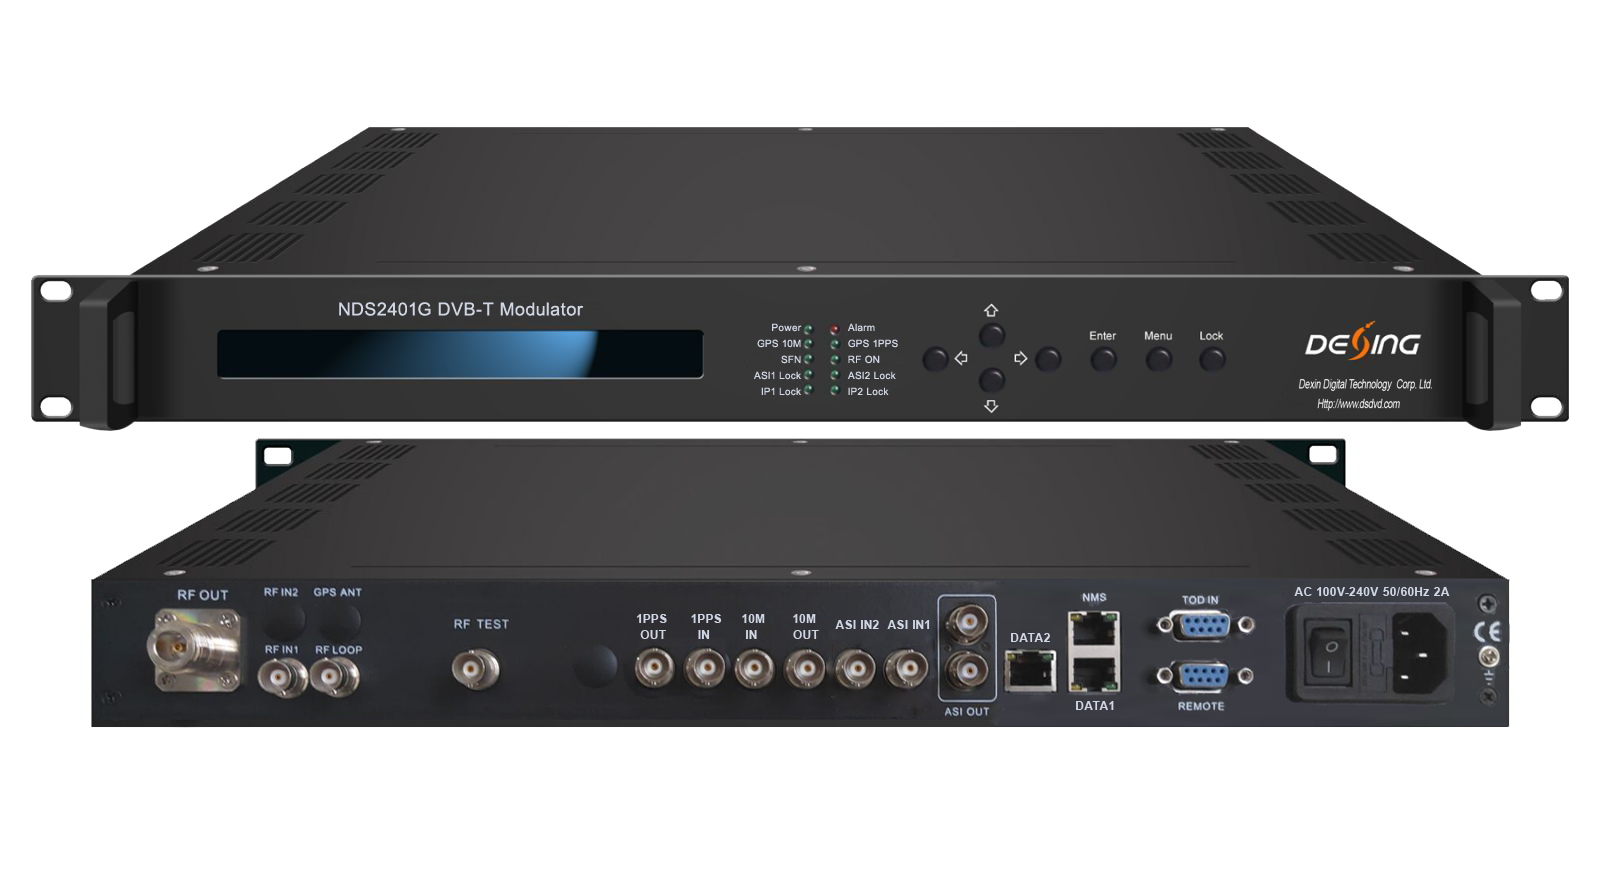 NDS2401G DVB-T Modulator